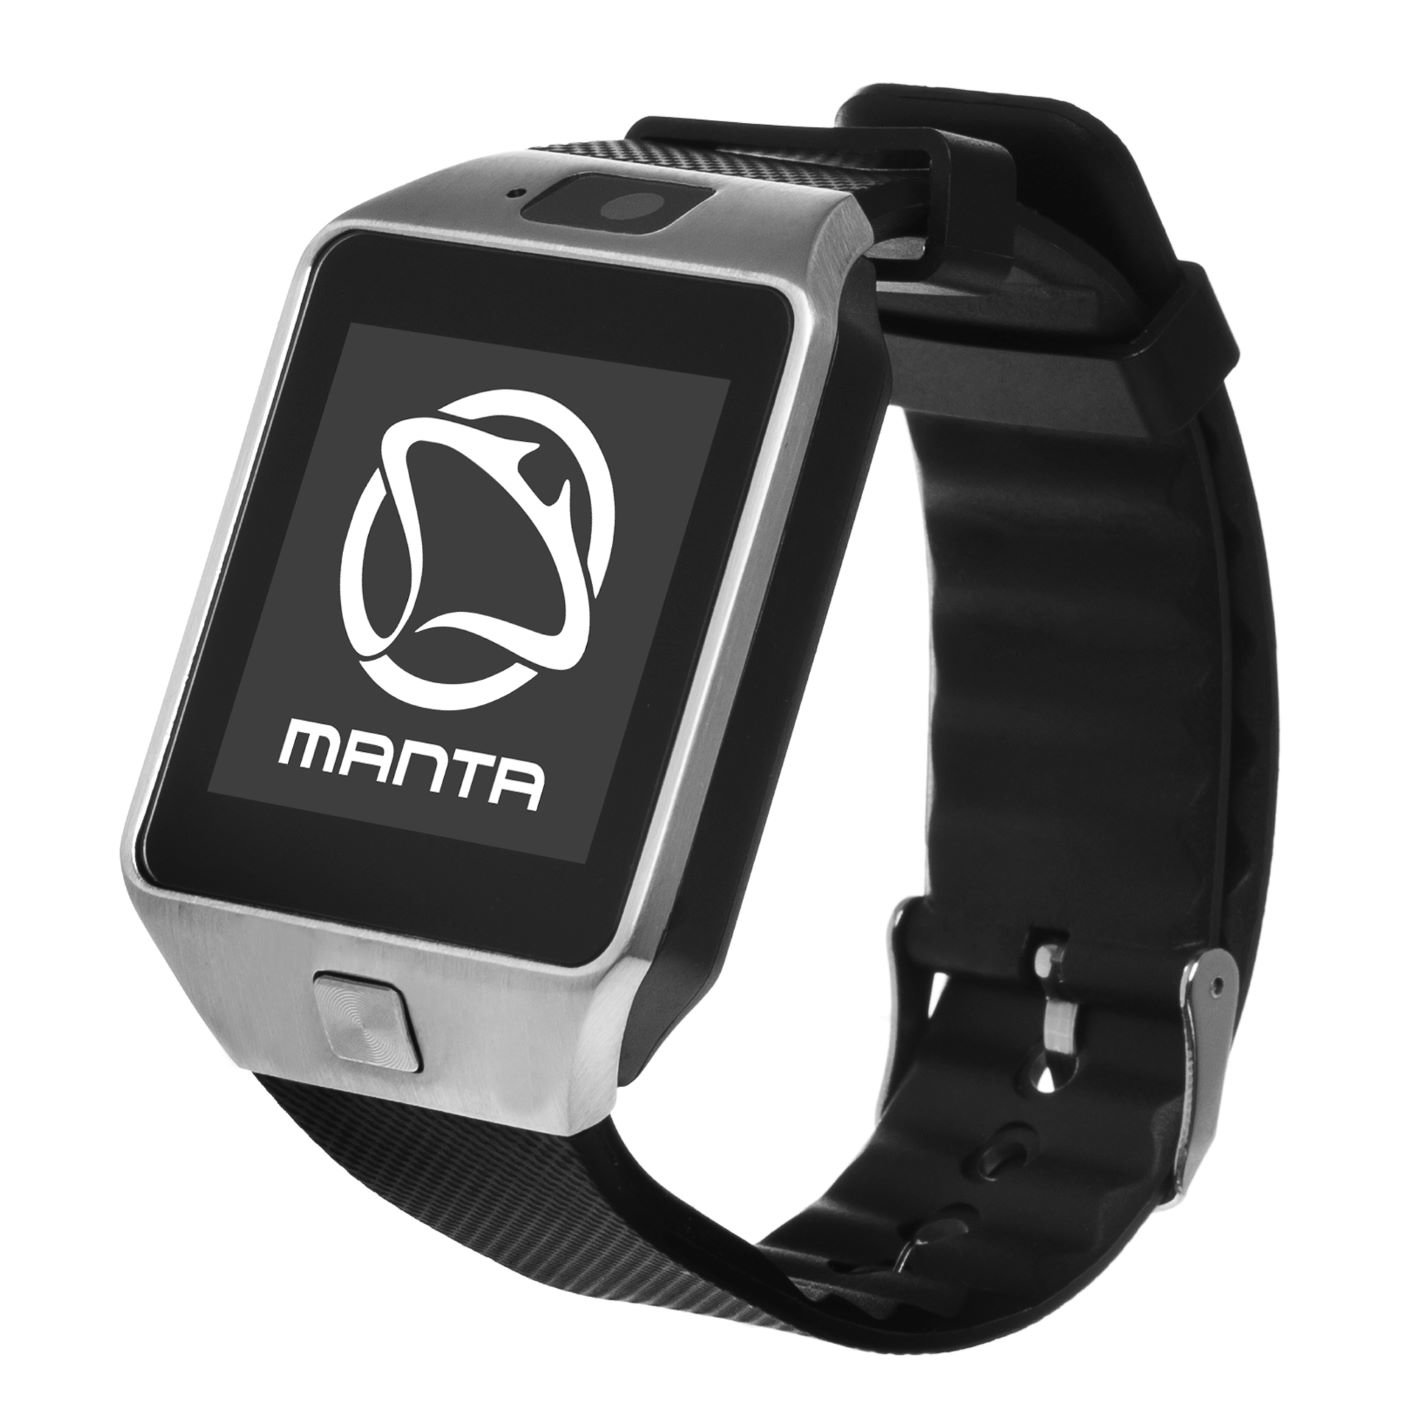 MANTA MA427 Stalowy Smartwatch - niskie ceny i opinie w Media Expert